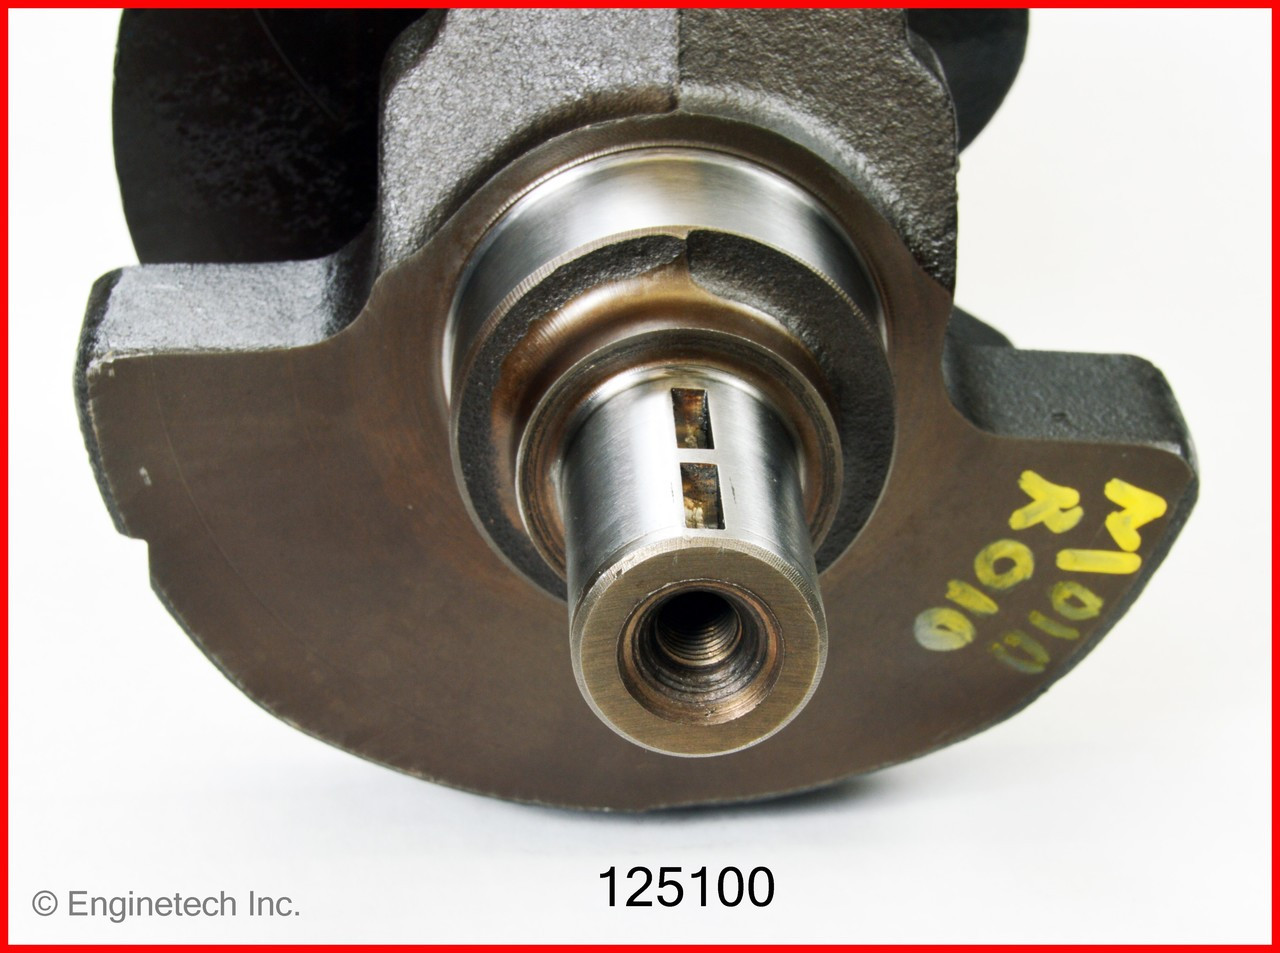 Crankshaft Kit - 1995 GMC K1500 5.7L (125100.K395)